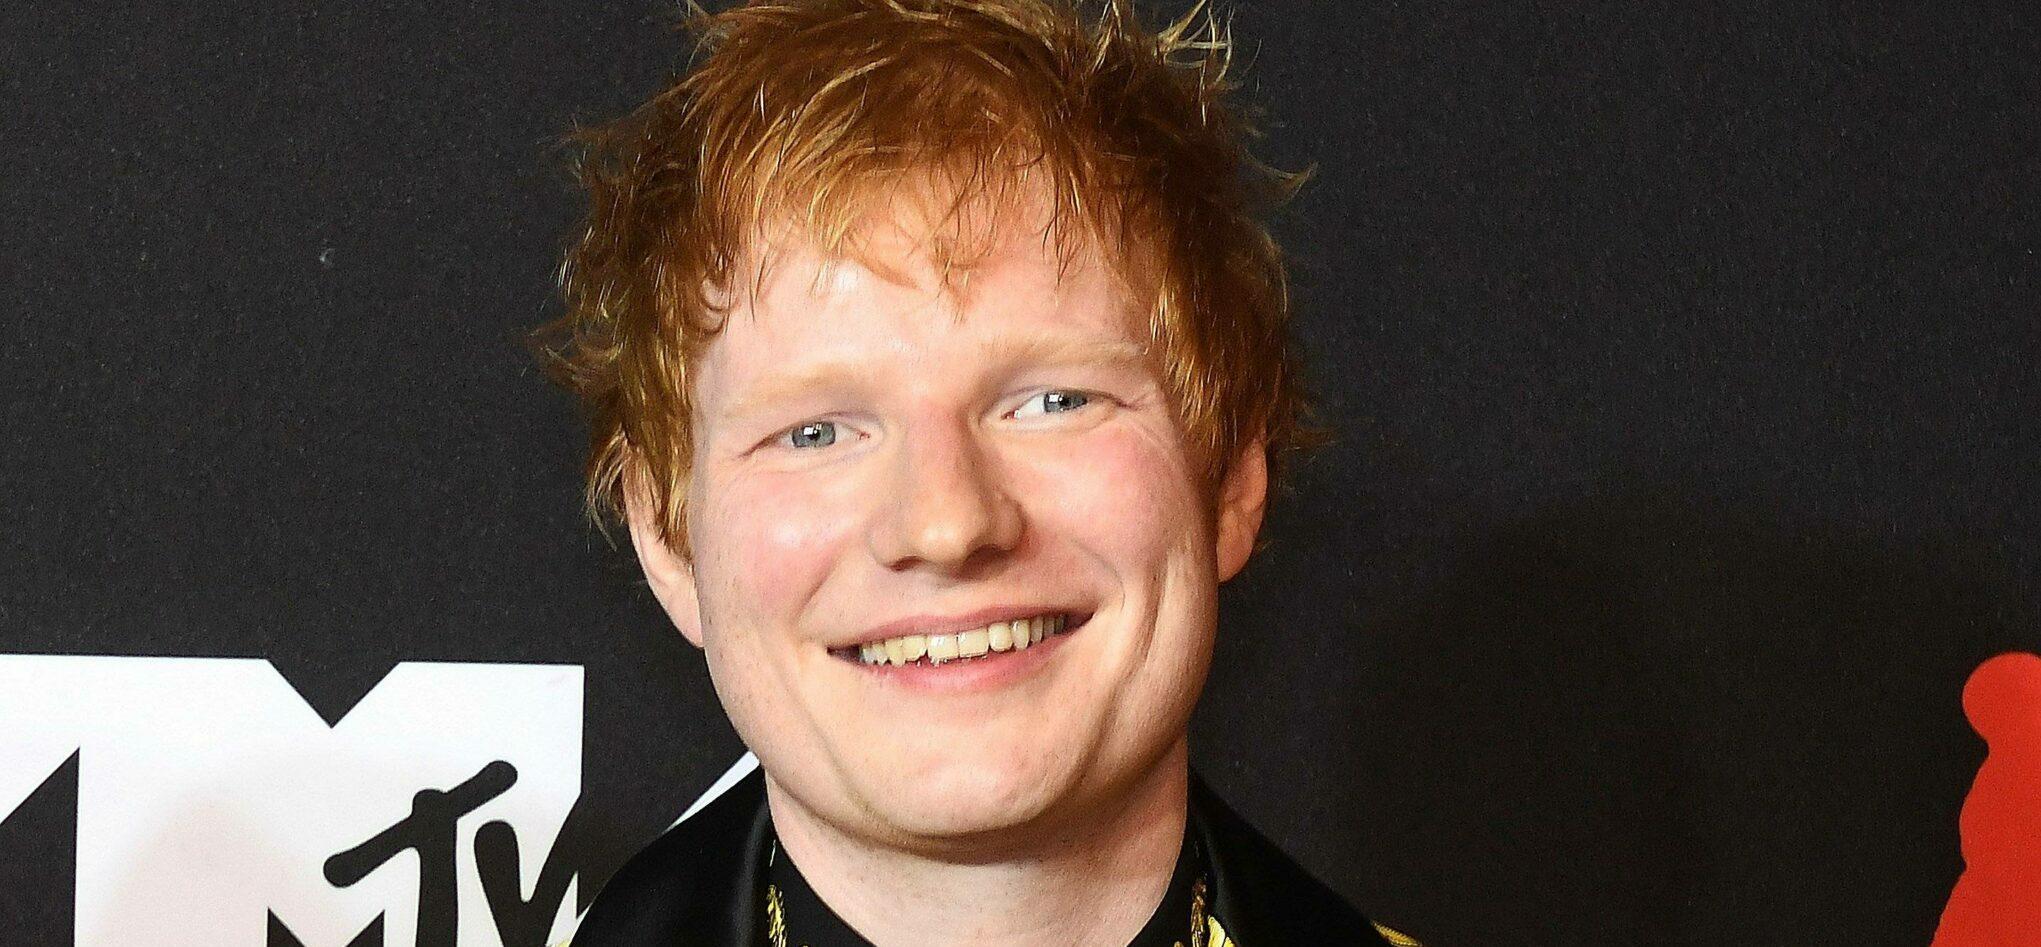 Ed Sheeran Took A Social Media Hiatus For This ‘Weird’ Reason